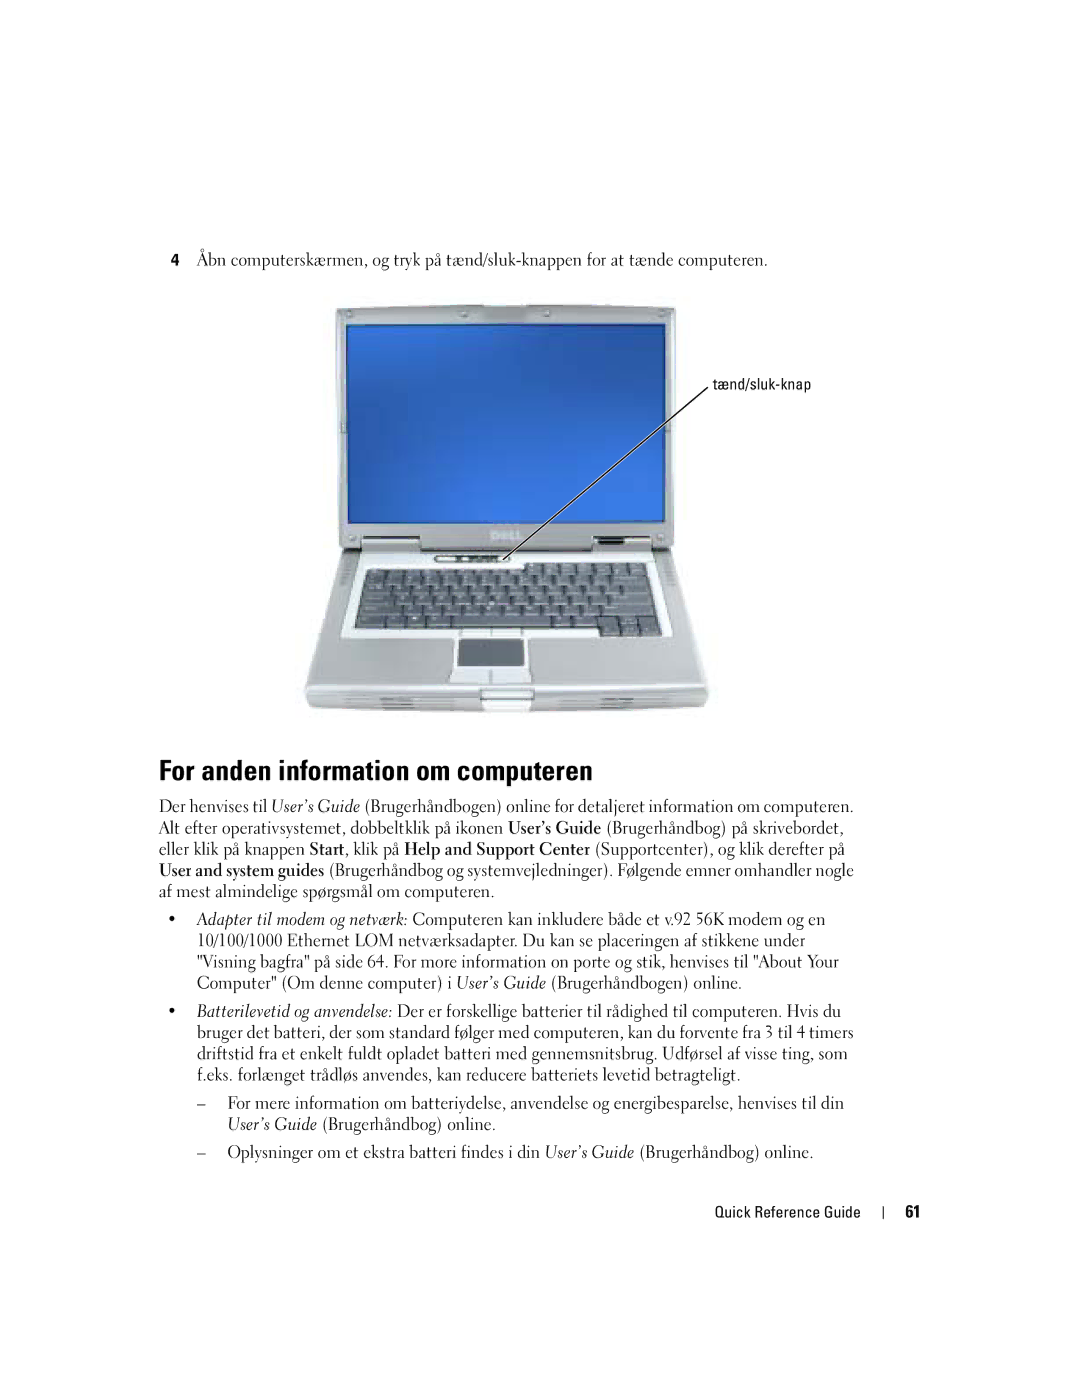 Dell M70 Mobile manual For anden information om computeren, Tænd/sluk-knap 